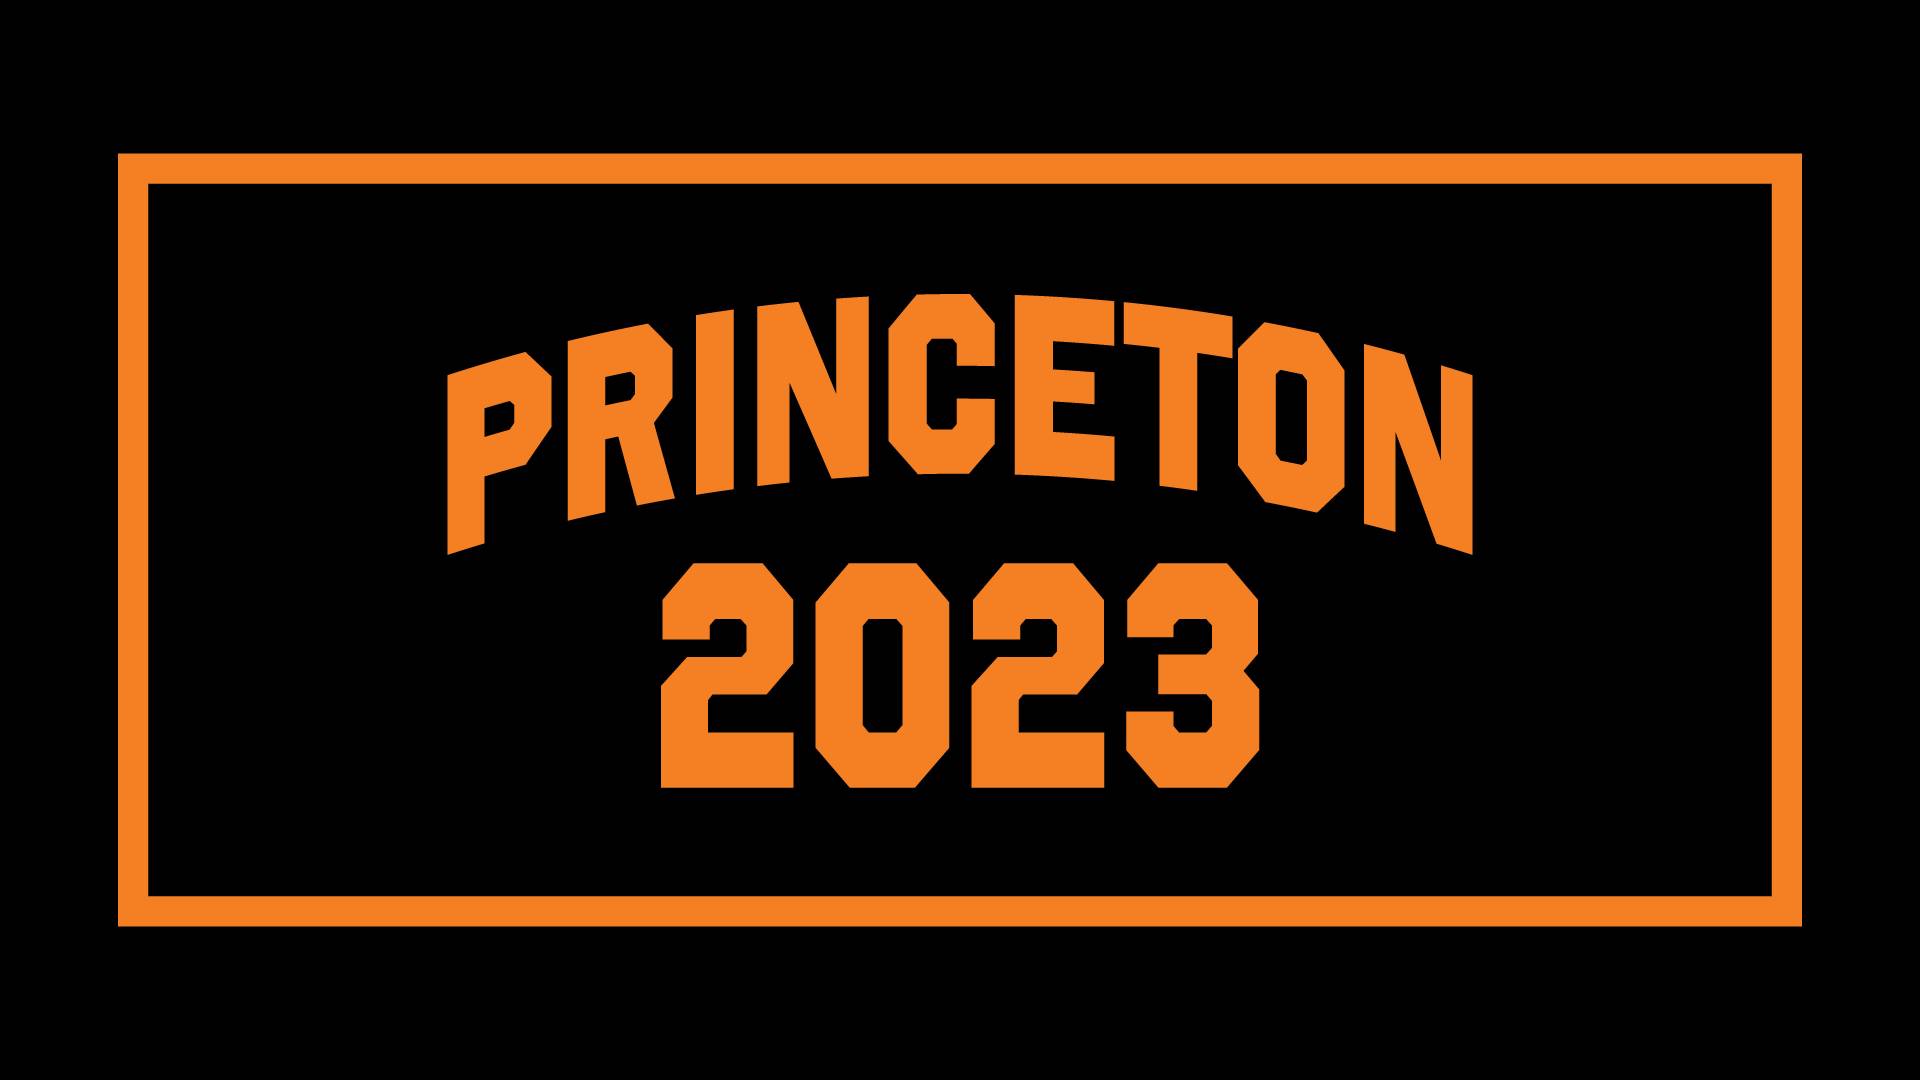 "Princeton 2023" banner